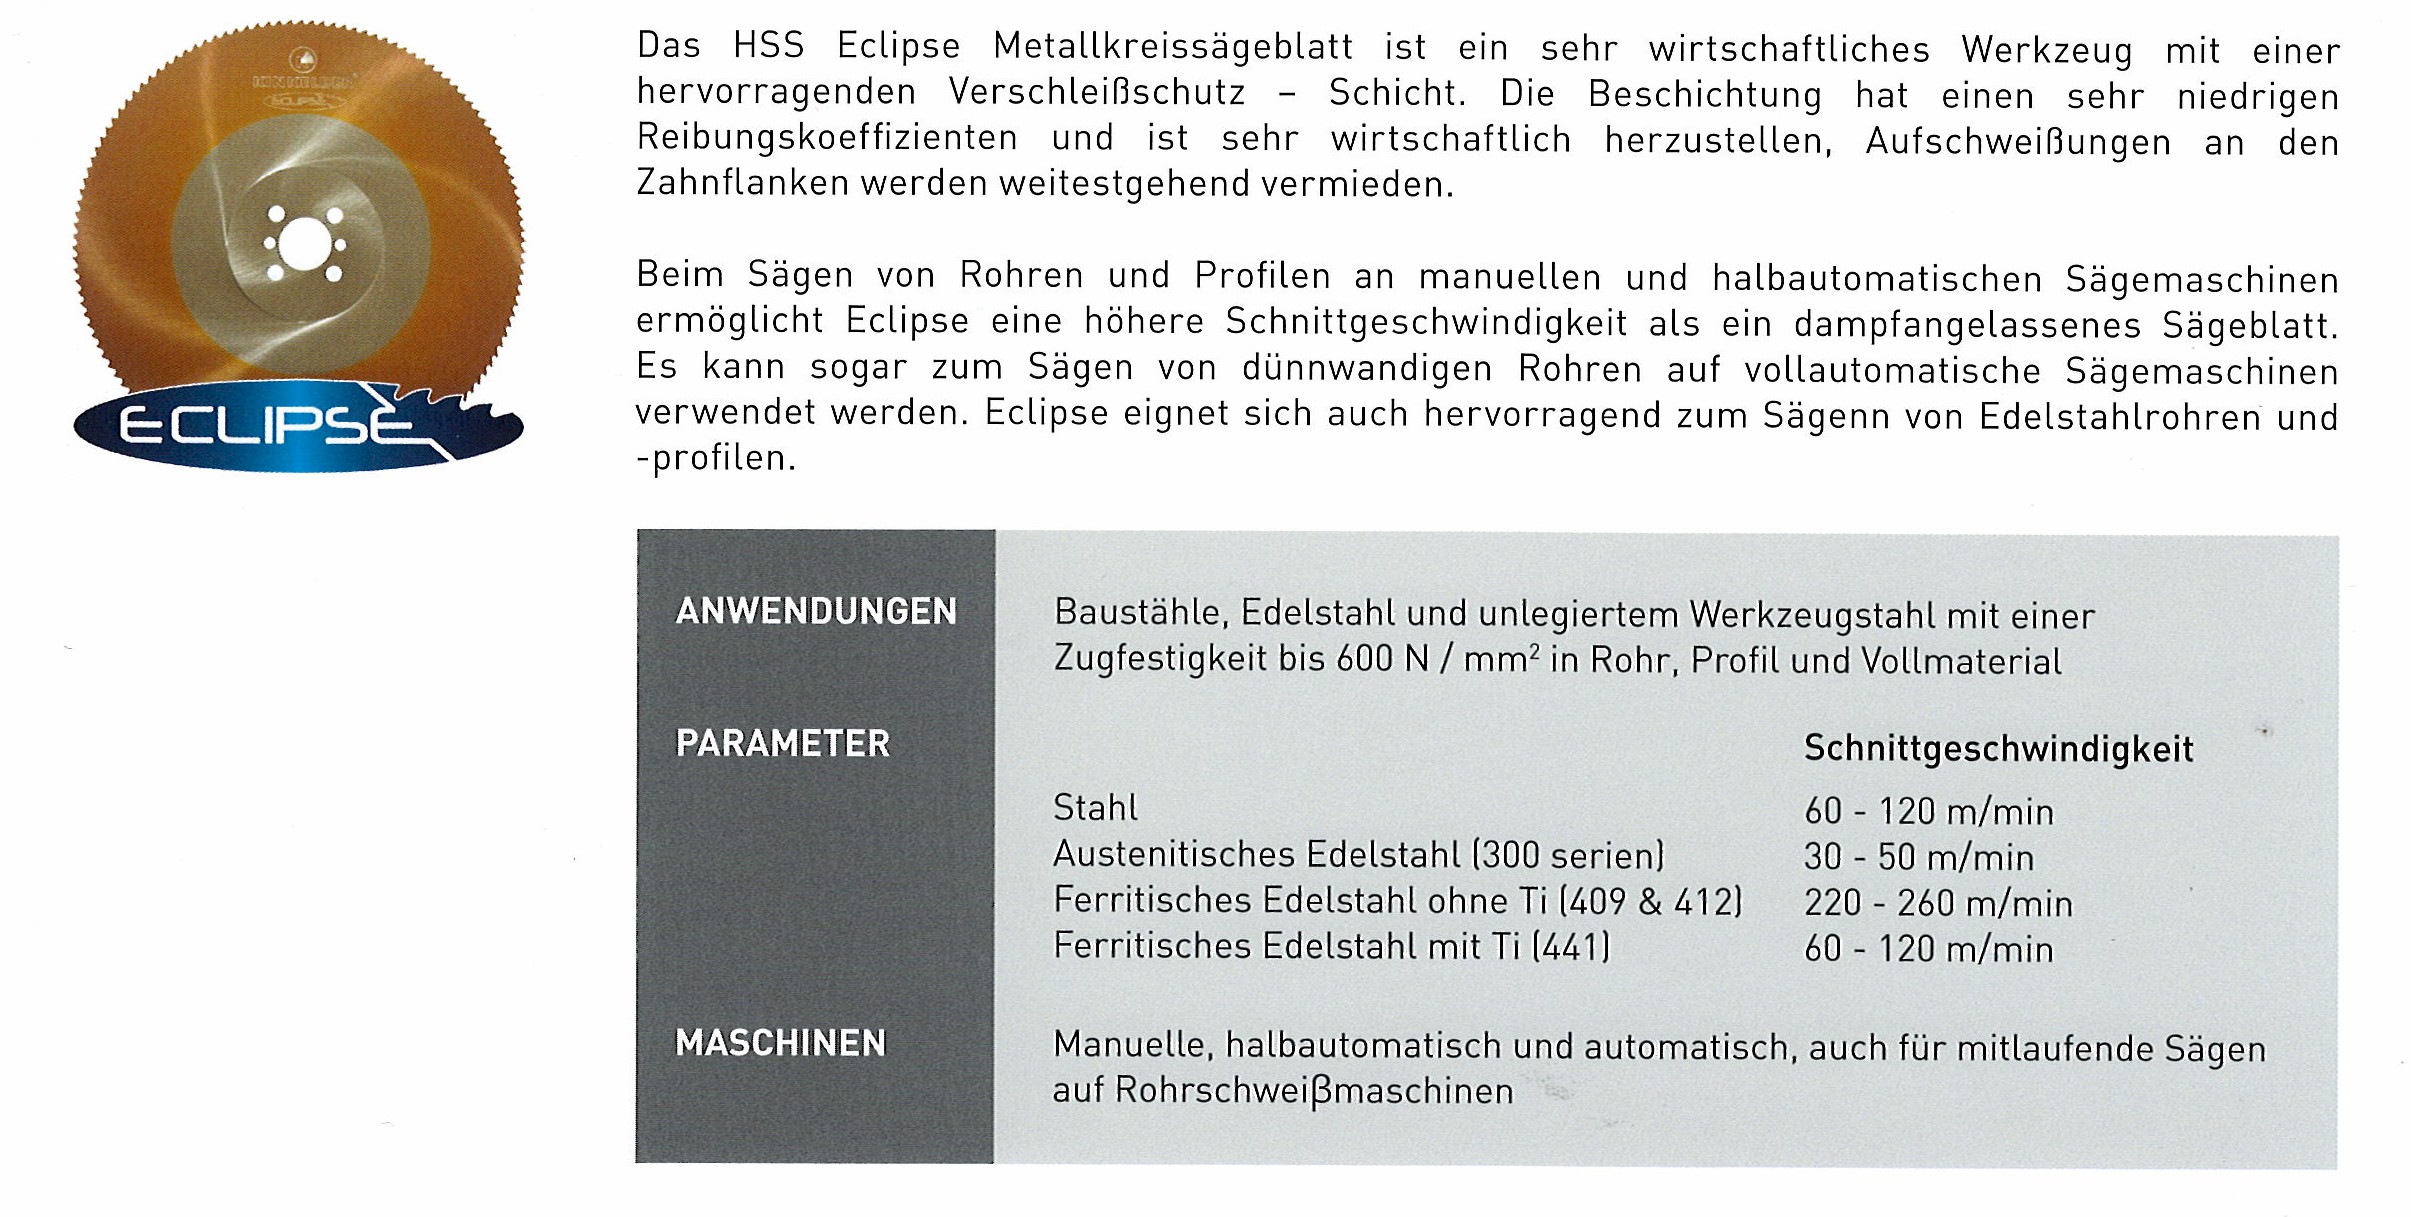 Beschreibung HSS Blatt Eclipse